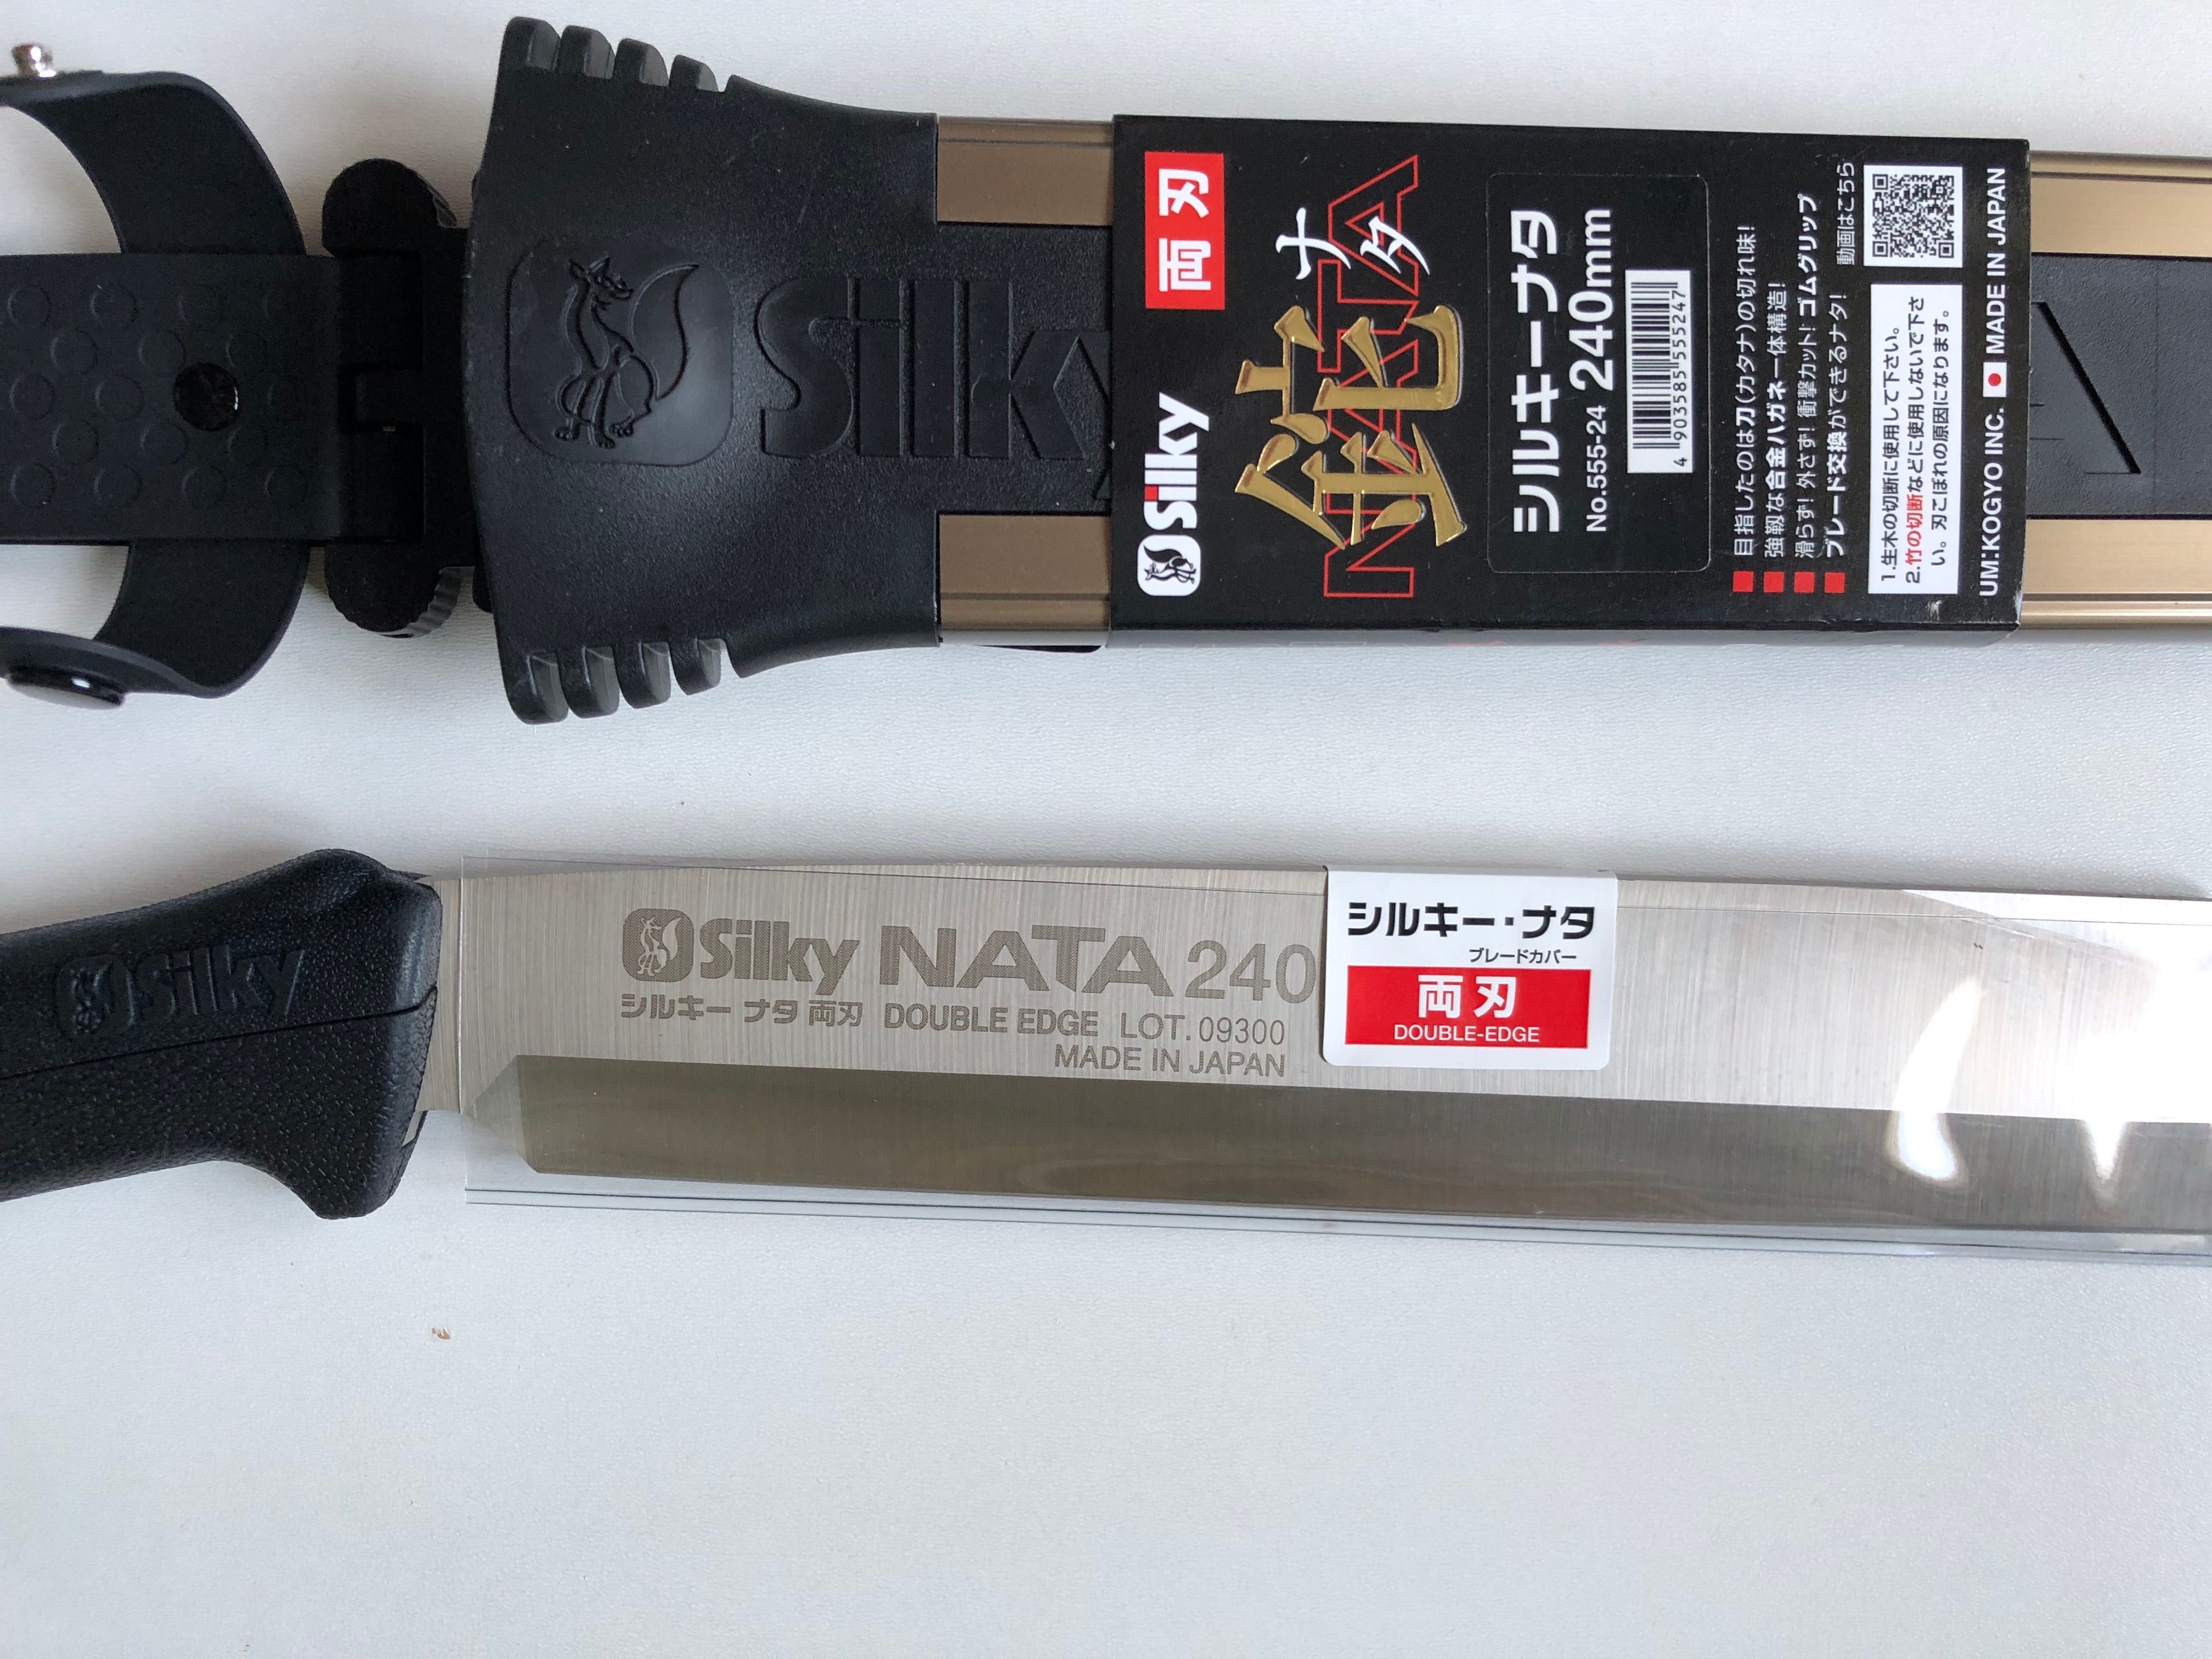 Сокирка//колун Silky NATA 240mm Made in Japan.